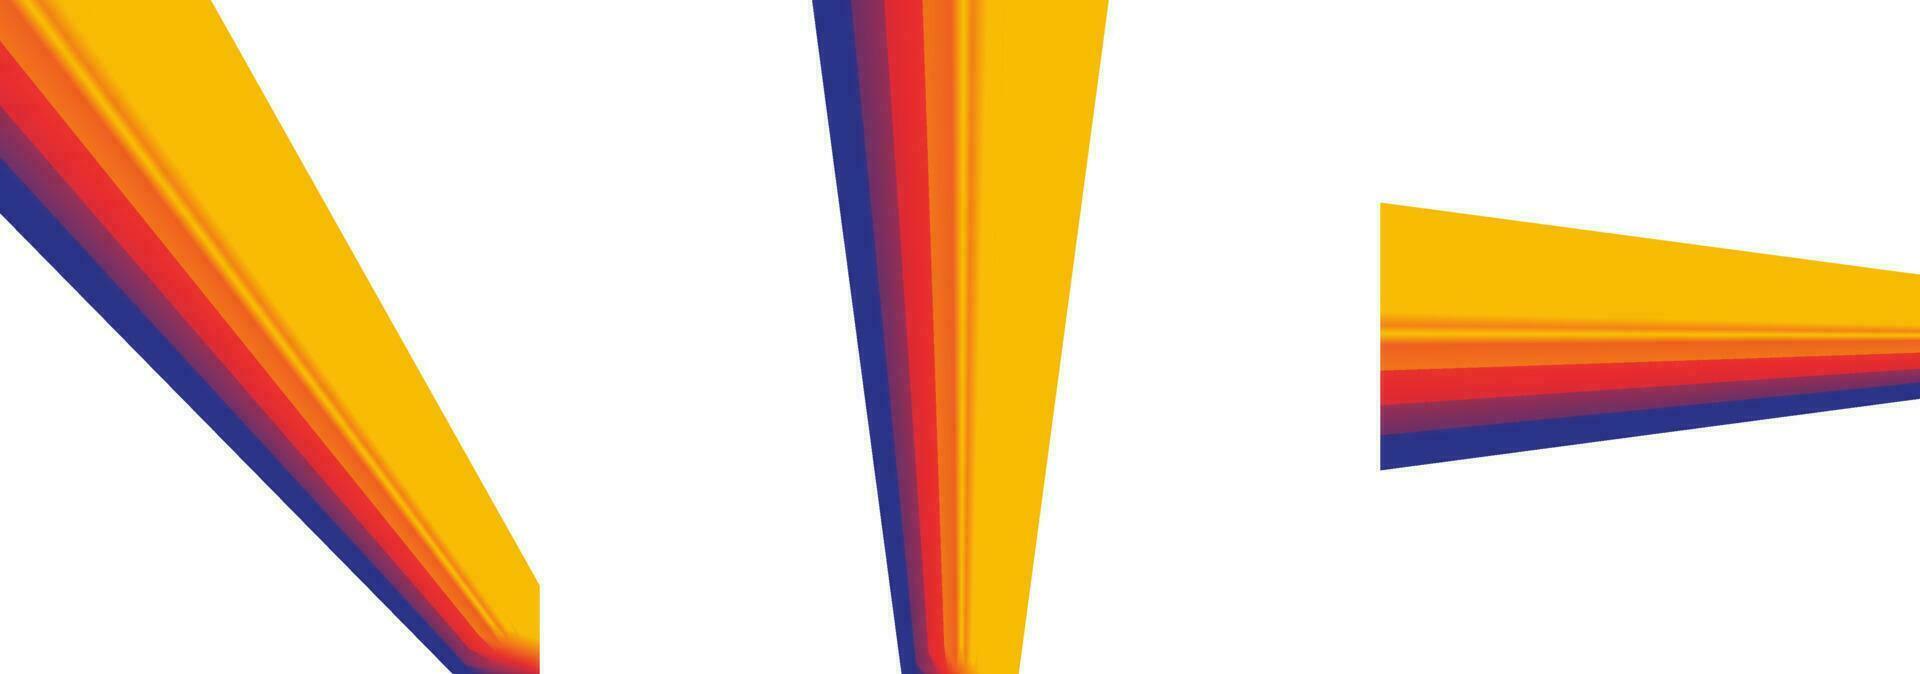 reeks van helling achtergrond met mooi vloeistof golvend gradatie kleur rood, blauw, geel wit achtergrond.verticaal banier vector